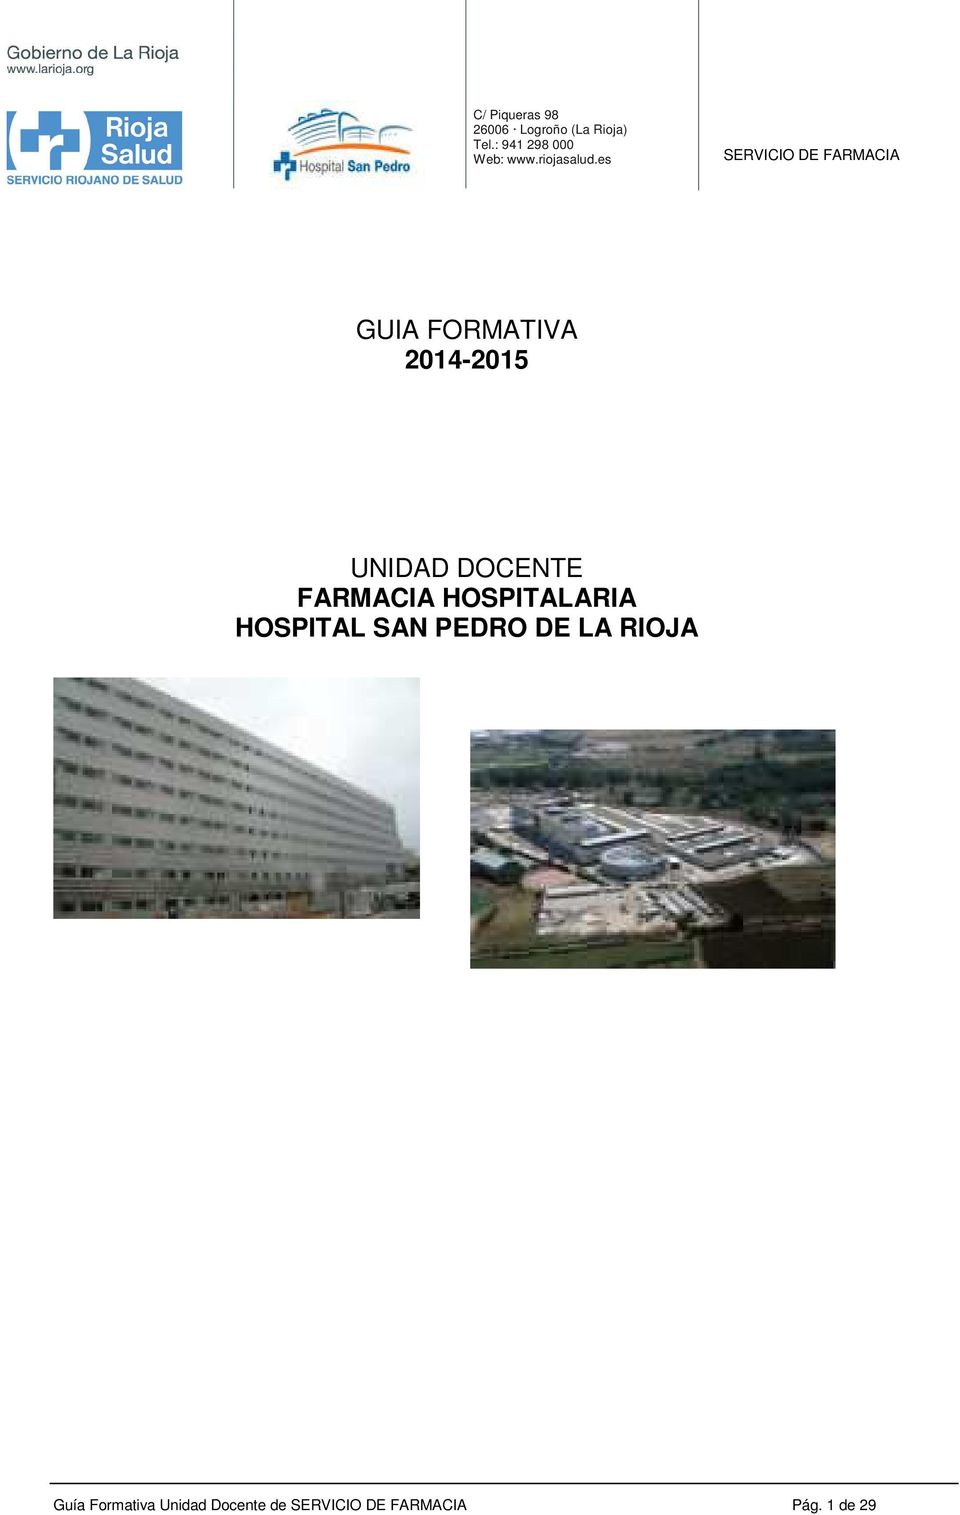 HOSPITAL SAN PEDRO DE LA RIOJA